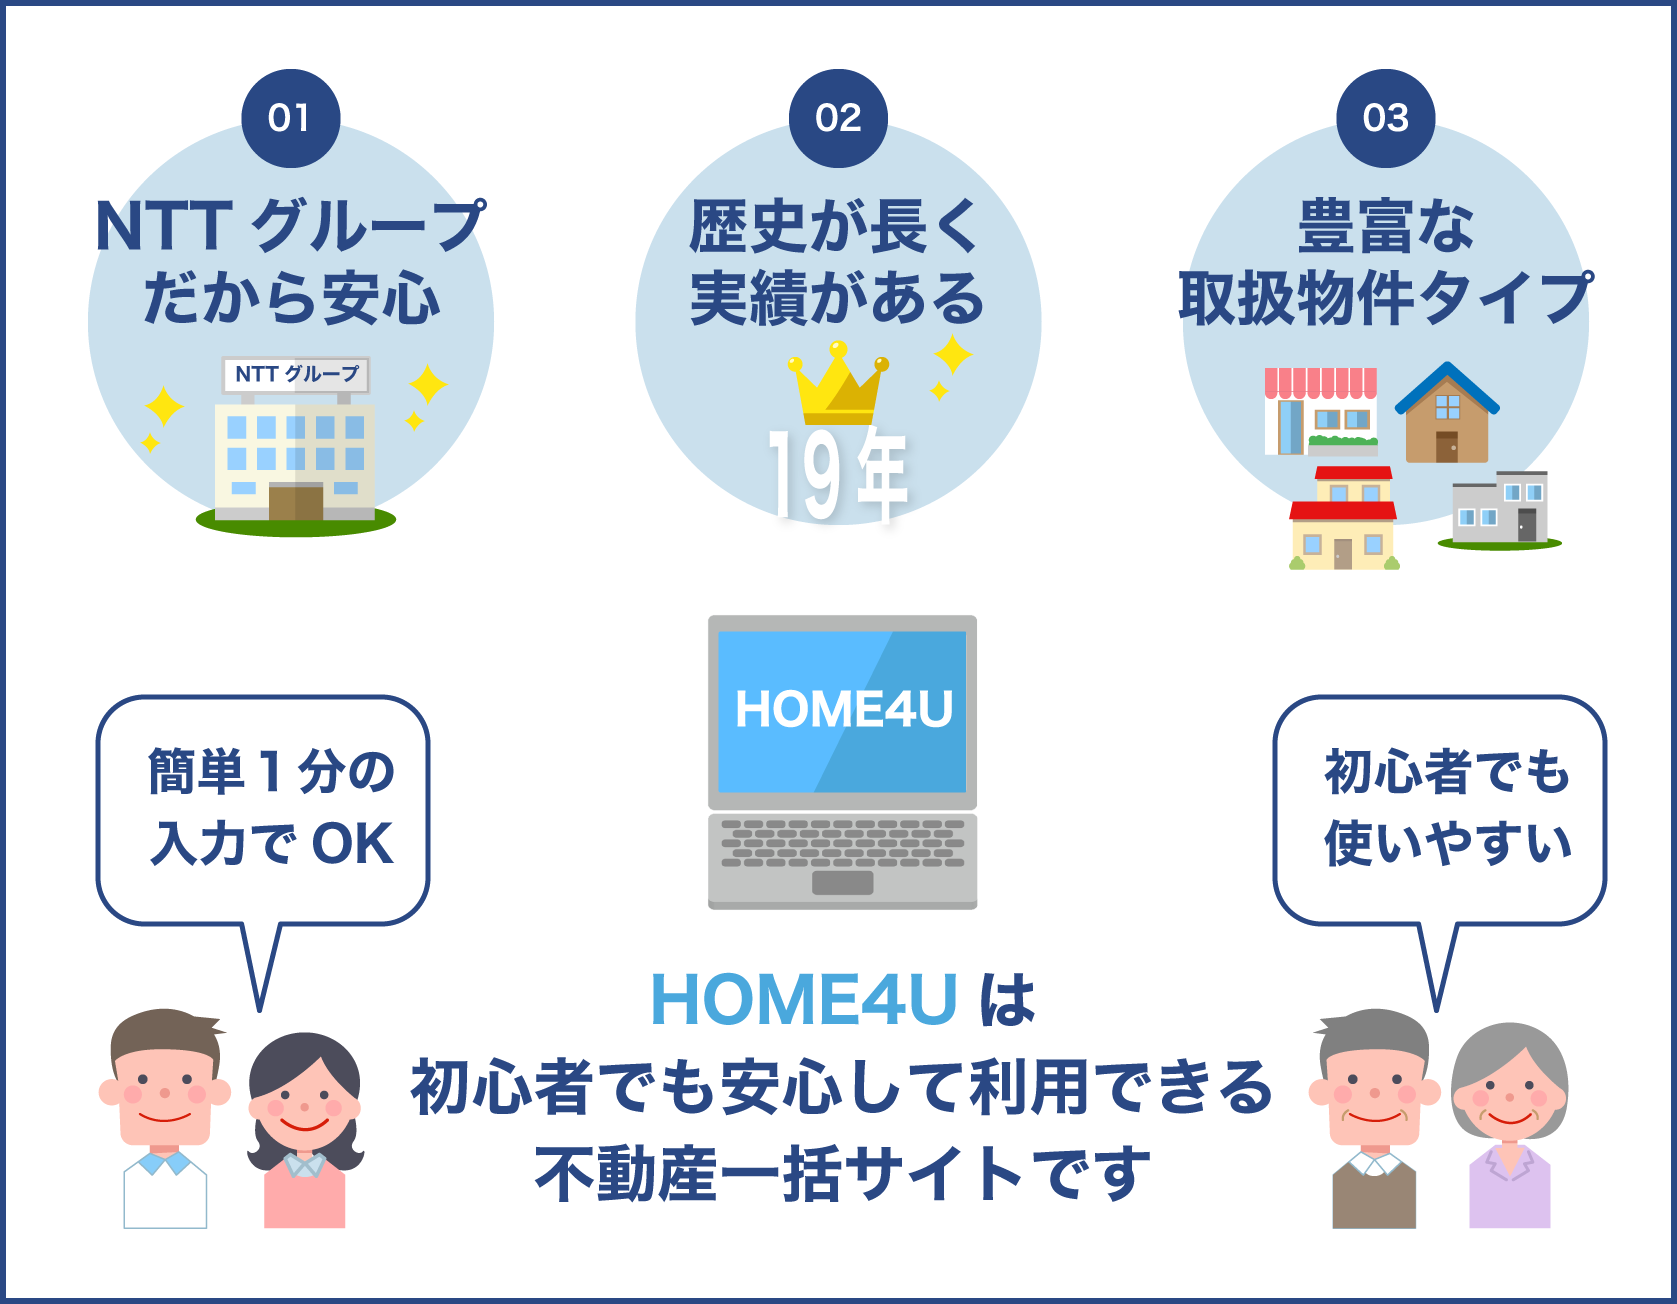 HOME4Uは初心者でも安心して利用できる不動産一括サイトです